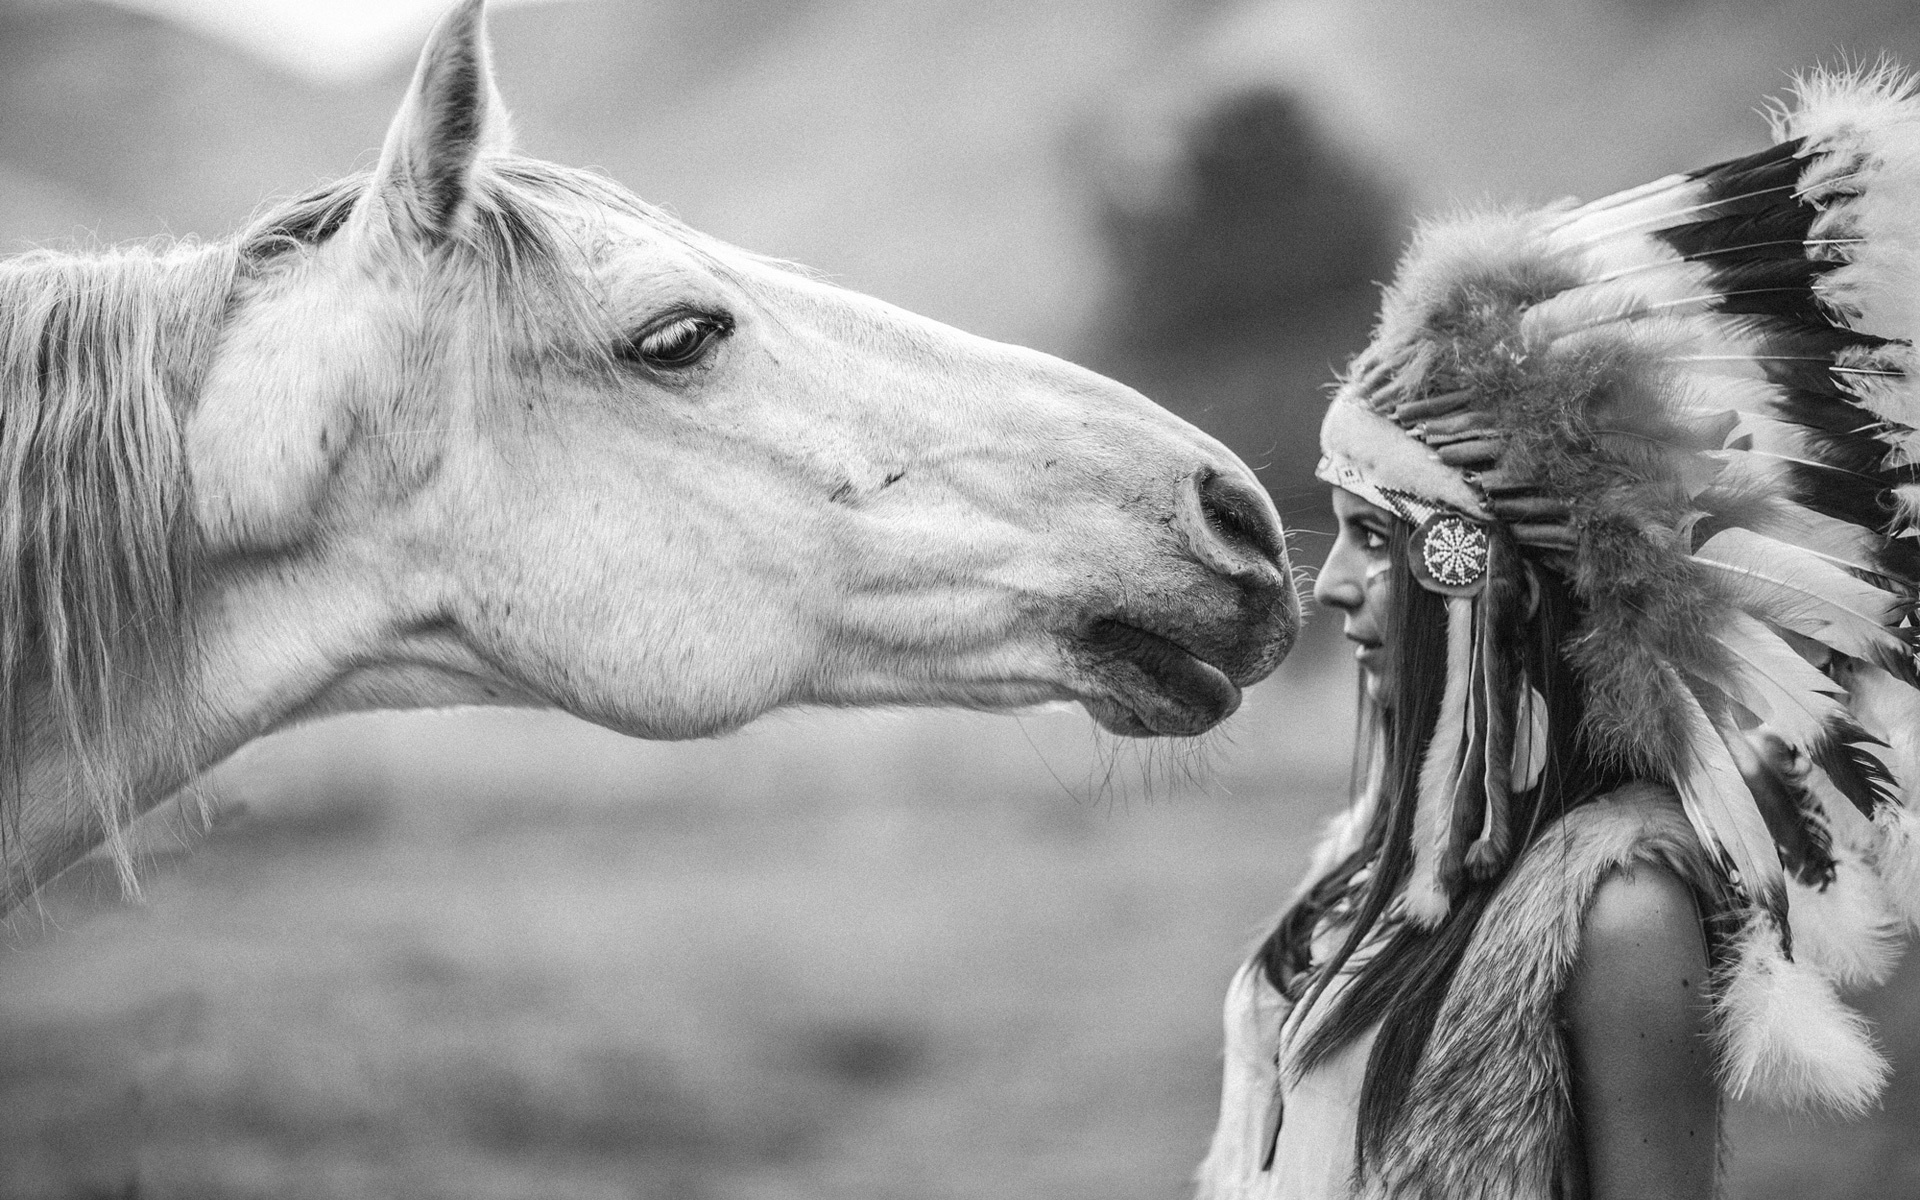 Обои для рабочего стола лошадь Индейцы молодая женщина Животные 1920x1200 Лошади индеец индейца девушка Девушки молодые женщины животное